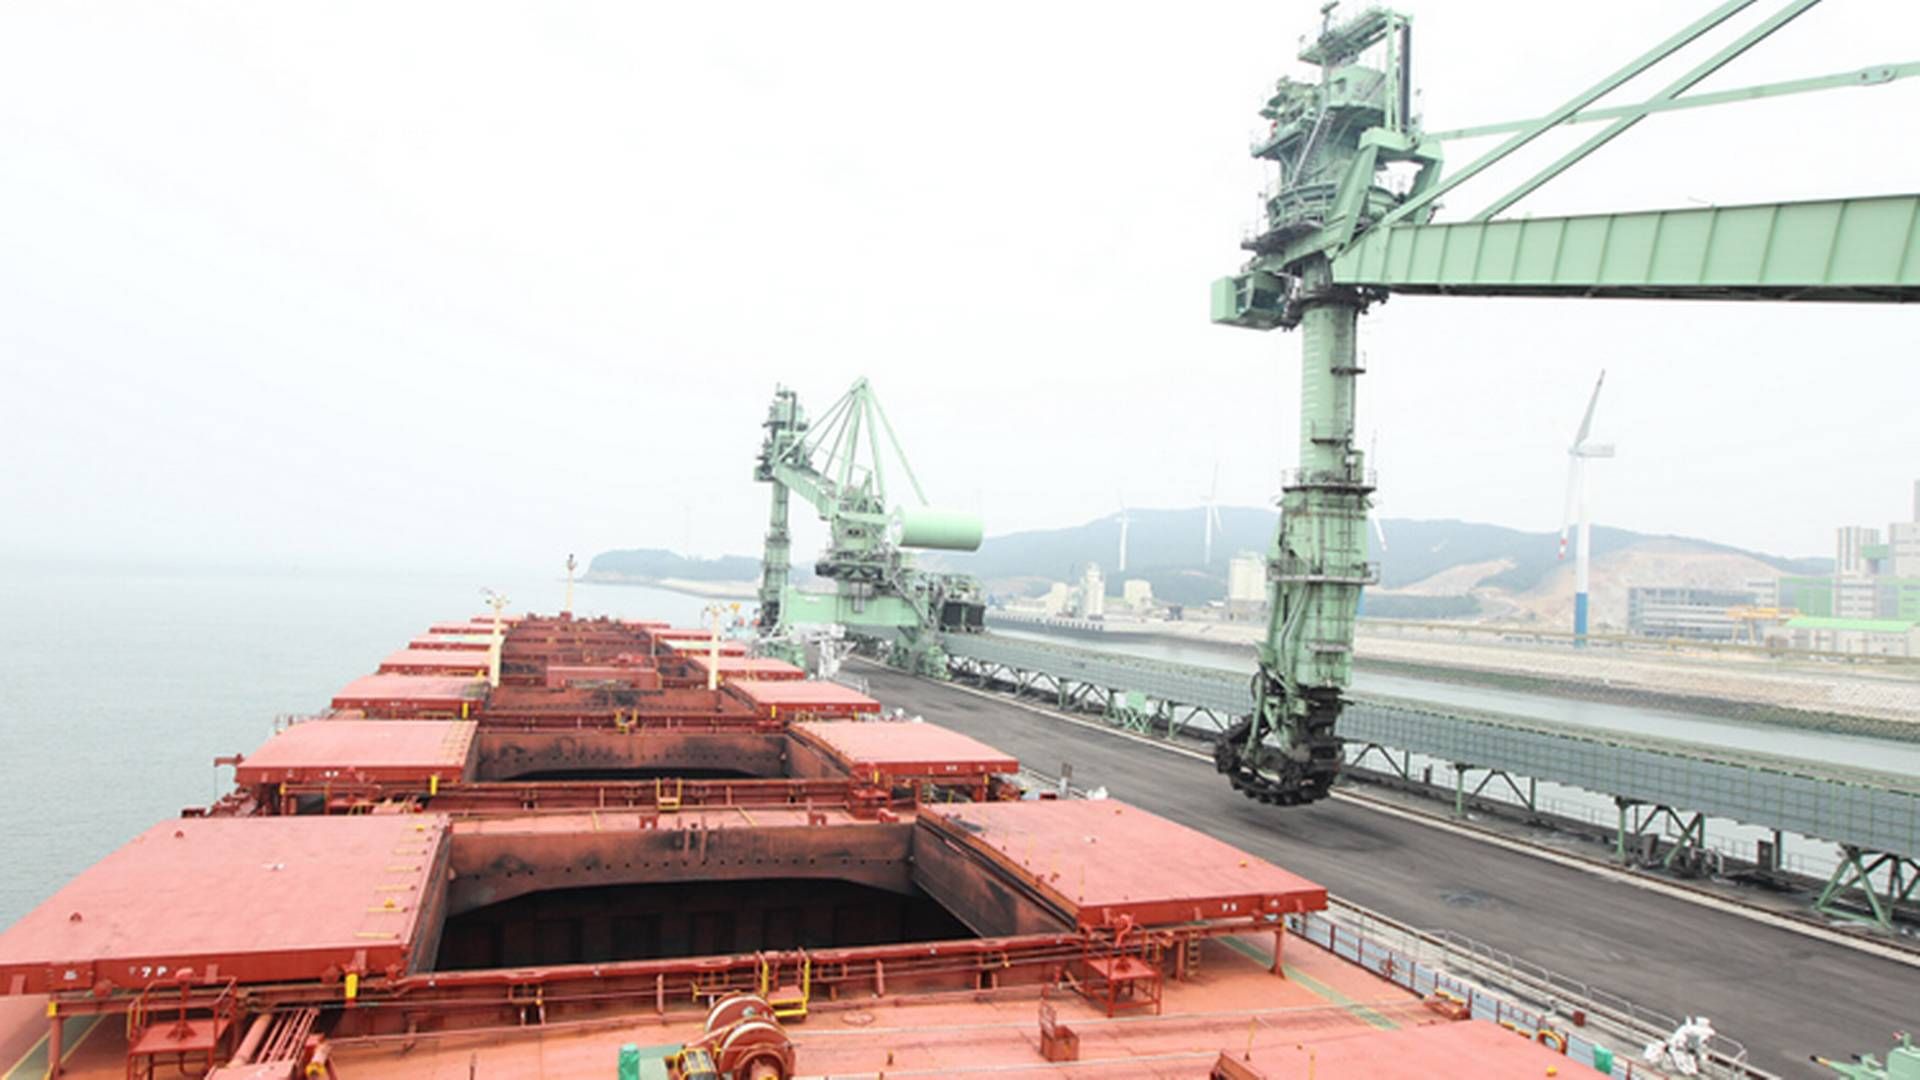 Skibene vil blive drevet af NBP og udelukkende laste kobber fra Chile til Asien. | Foto: Pr / Hmm